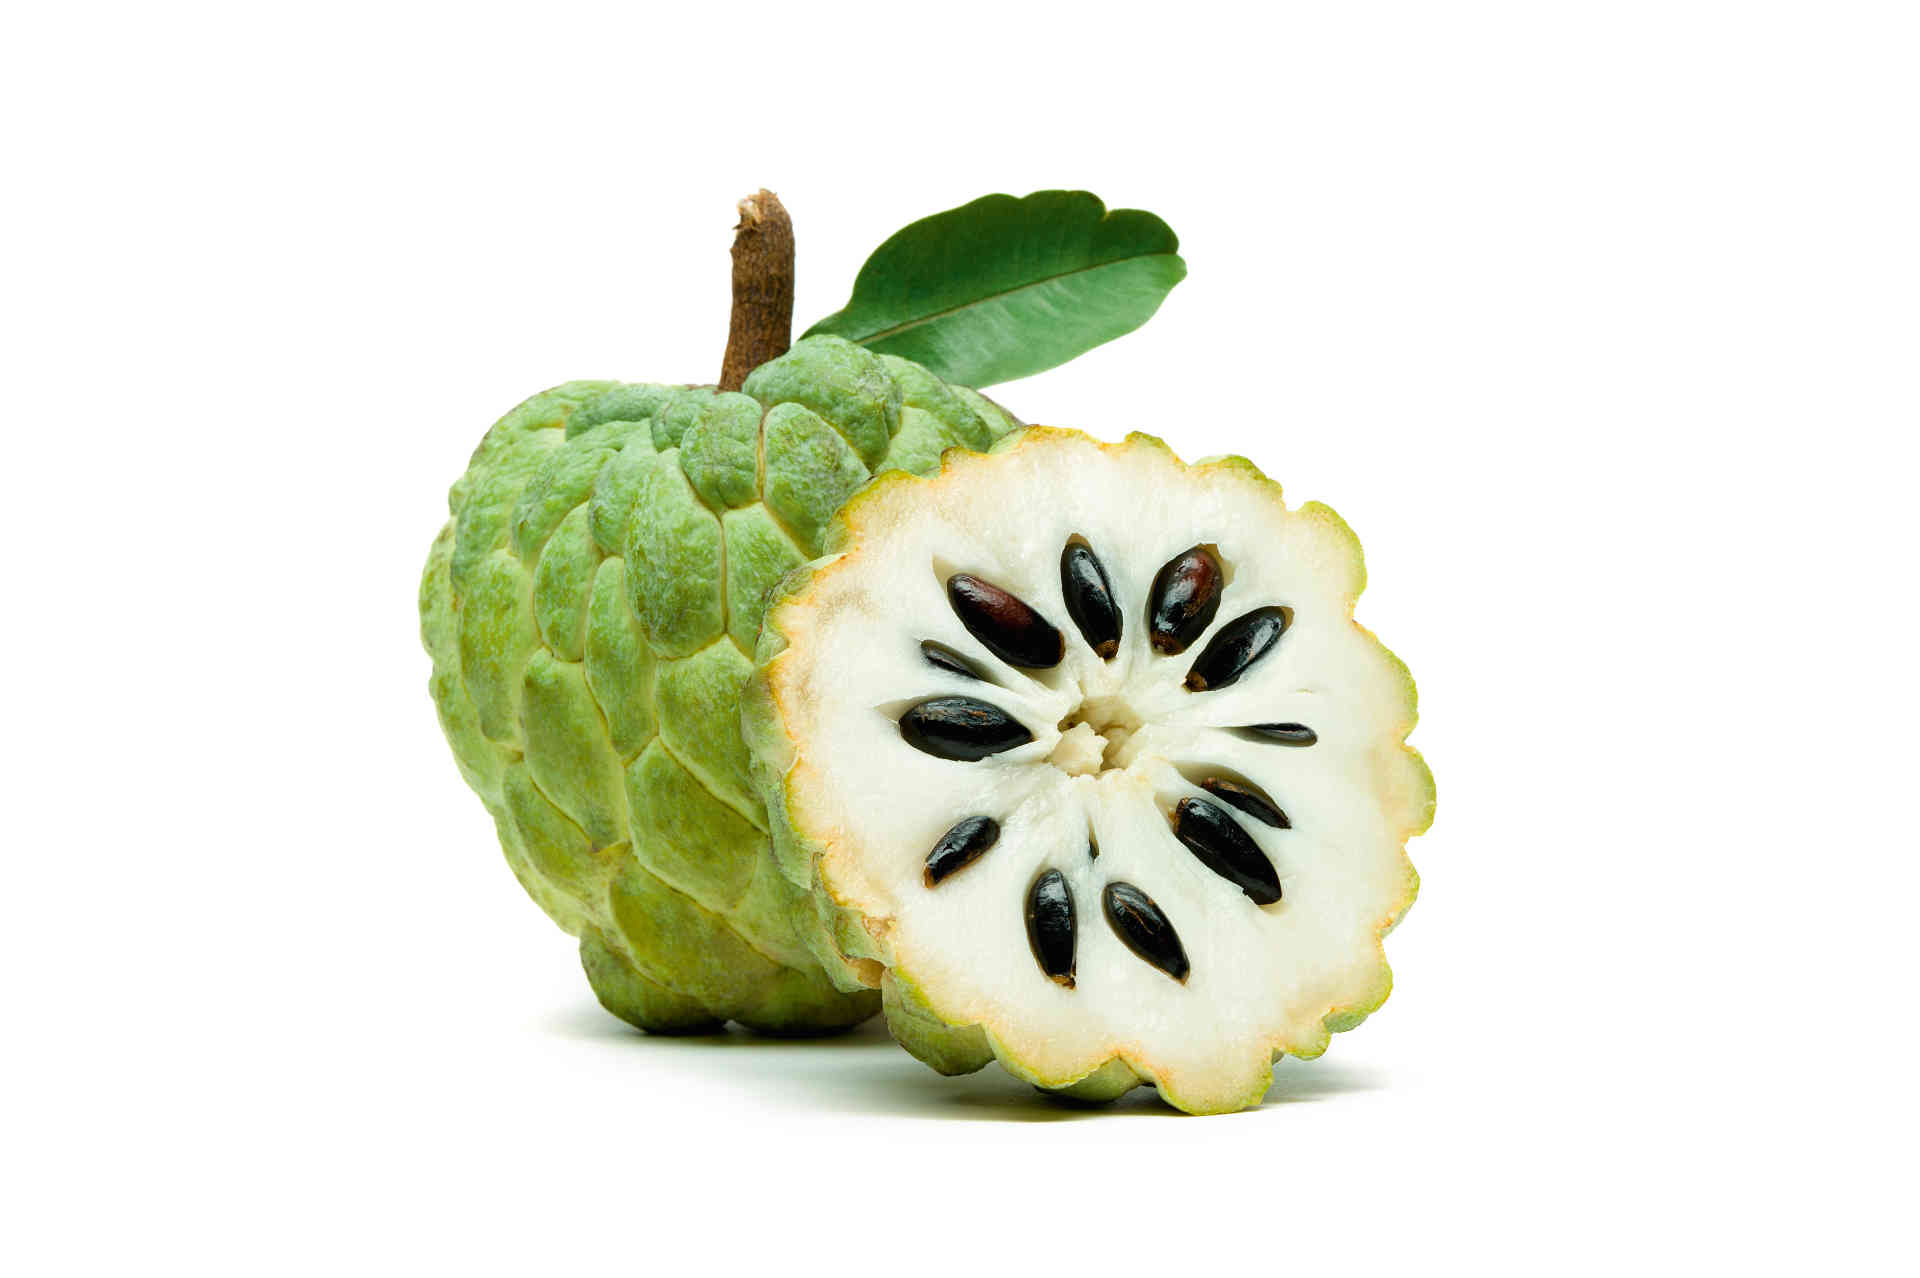 Die Frucht bringt eine Mixtur aus Ananas, Banane, Erdbeere und Zimt in den Mund. © Shutterstock